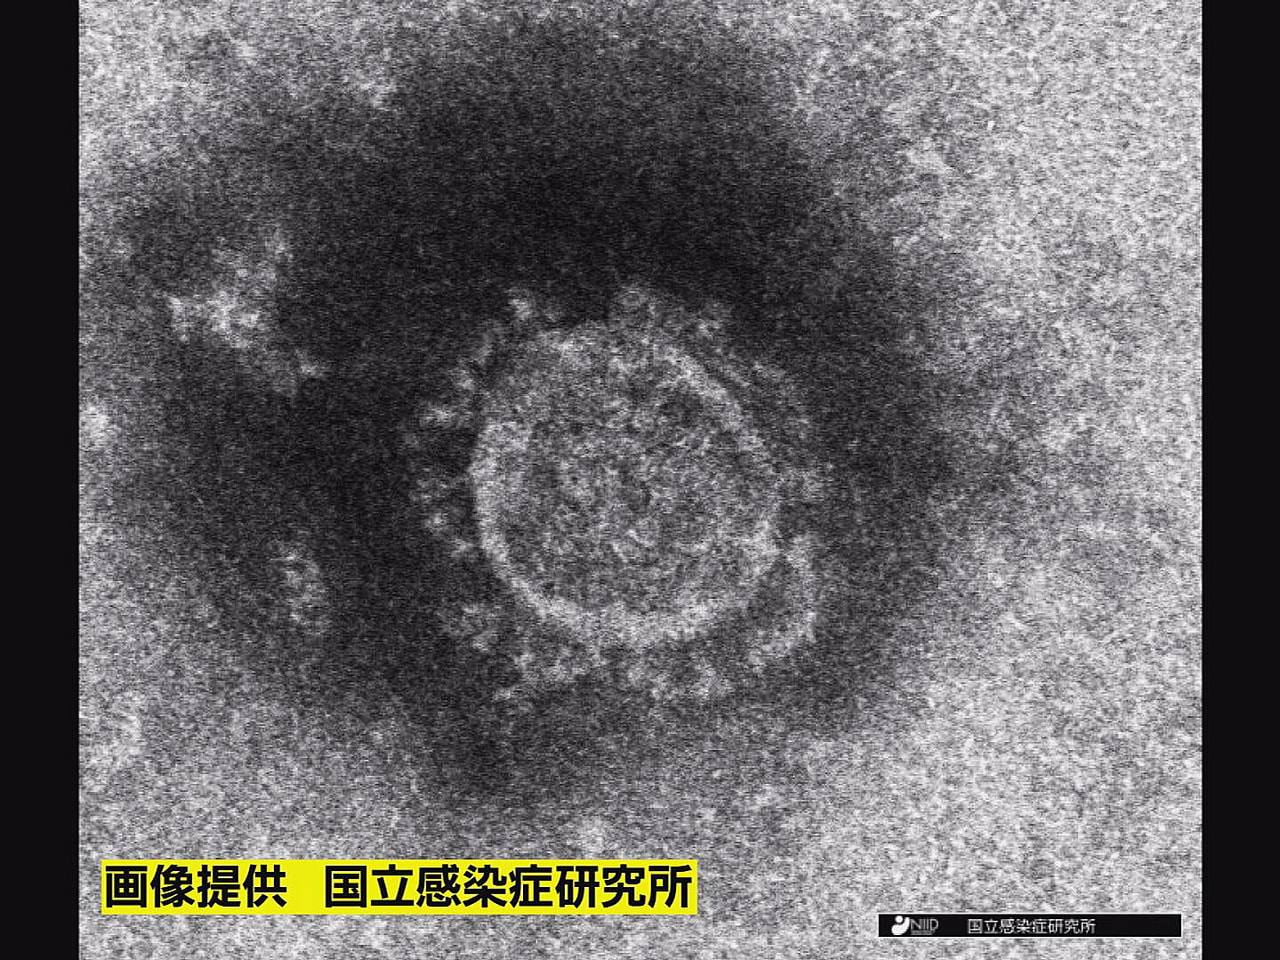 岐阜県は、１日、新型コロナウイルスの感染が新たに４人確認されたと発表しました。 ...